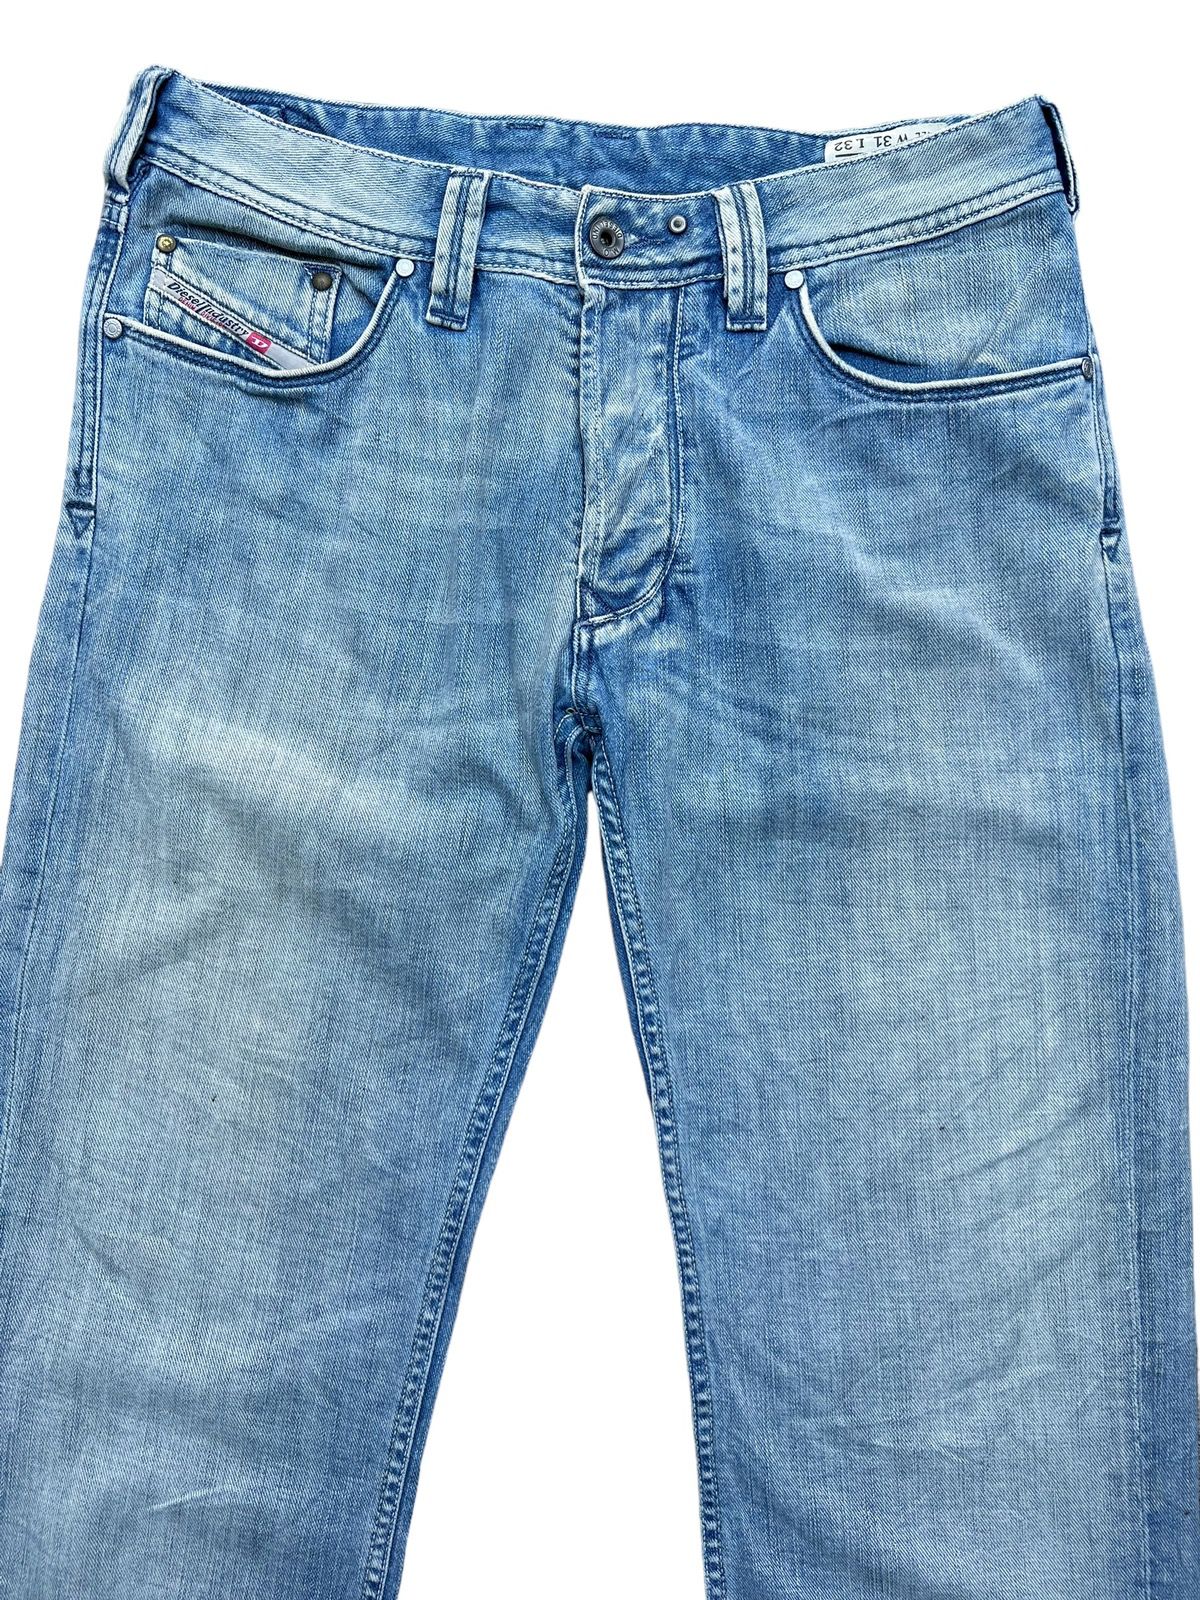 Vintage Distressed Diesel Industry Wide Jeans 32x30 - 4